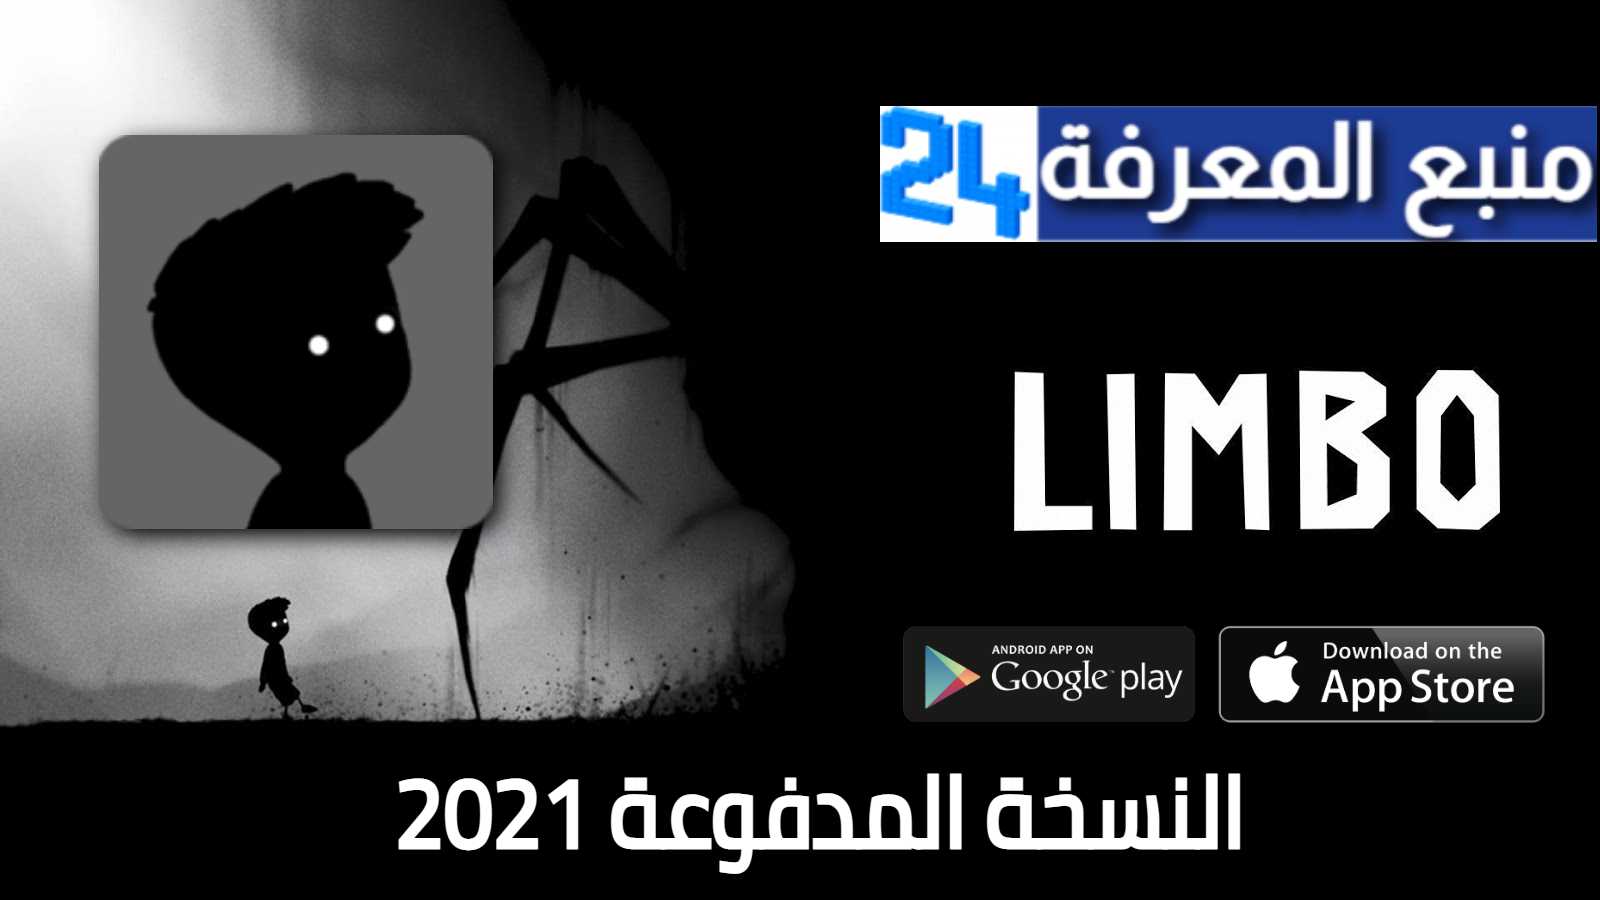 تحميل لعبة LIMBO النسخه المدفوعة للاندرويد والايفون 2021